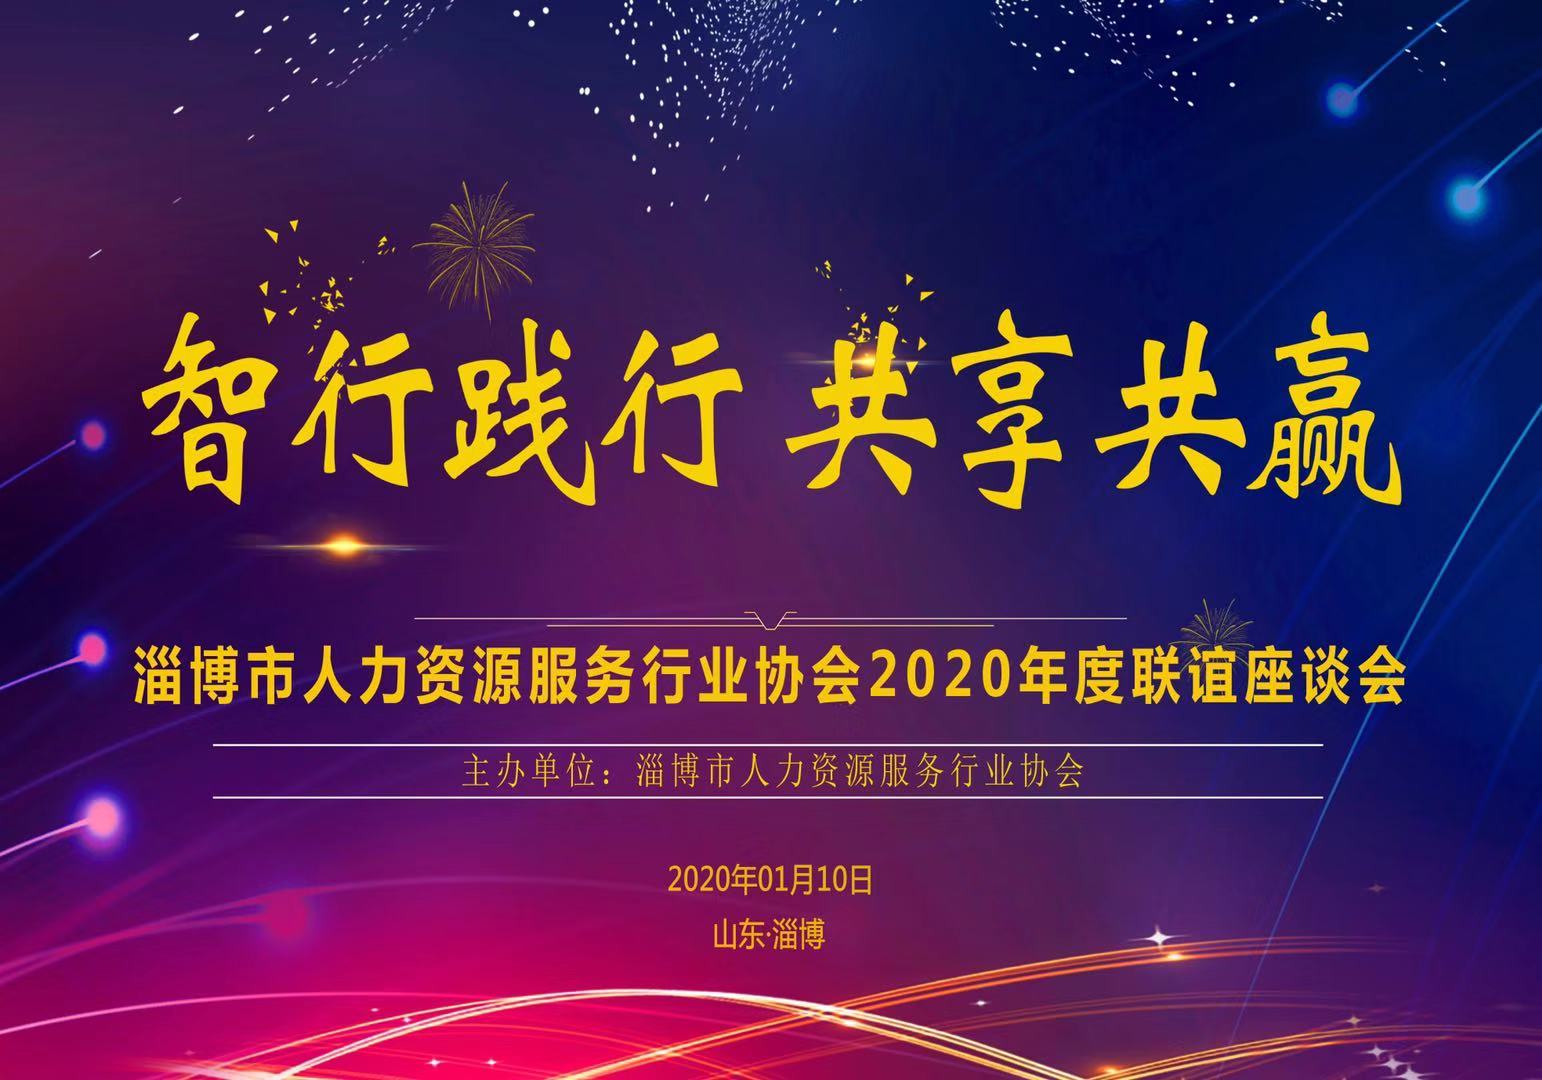 淄博市人力资源服务行业协会2019年度联谊座谈会成功举办